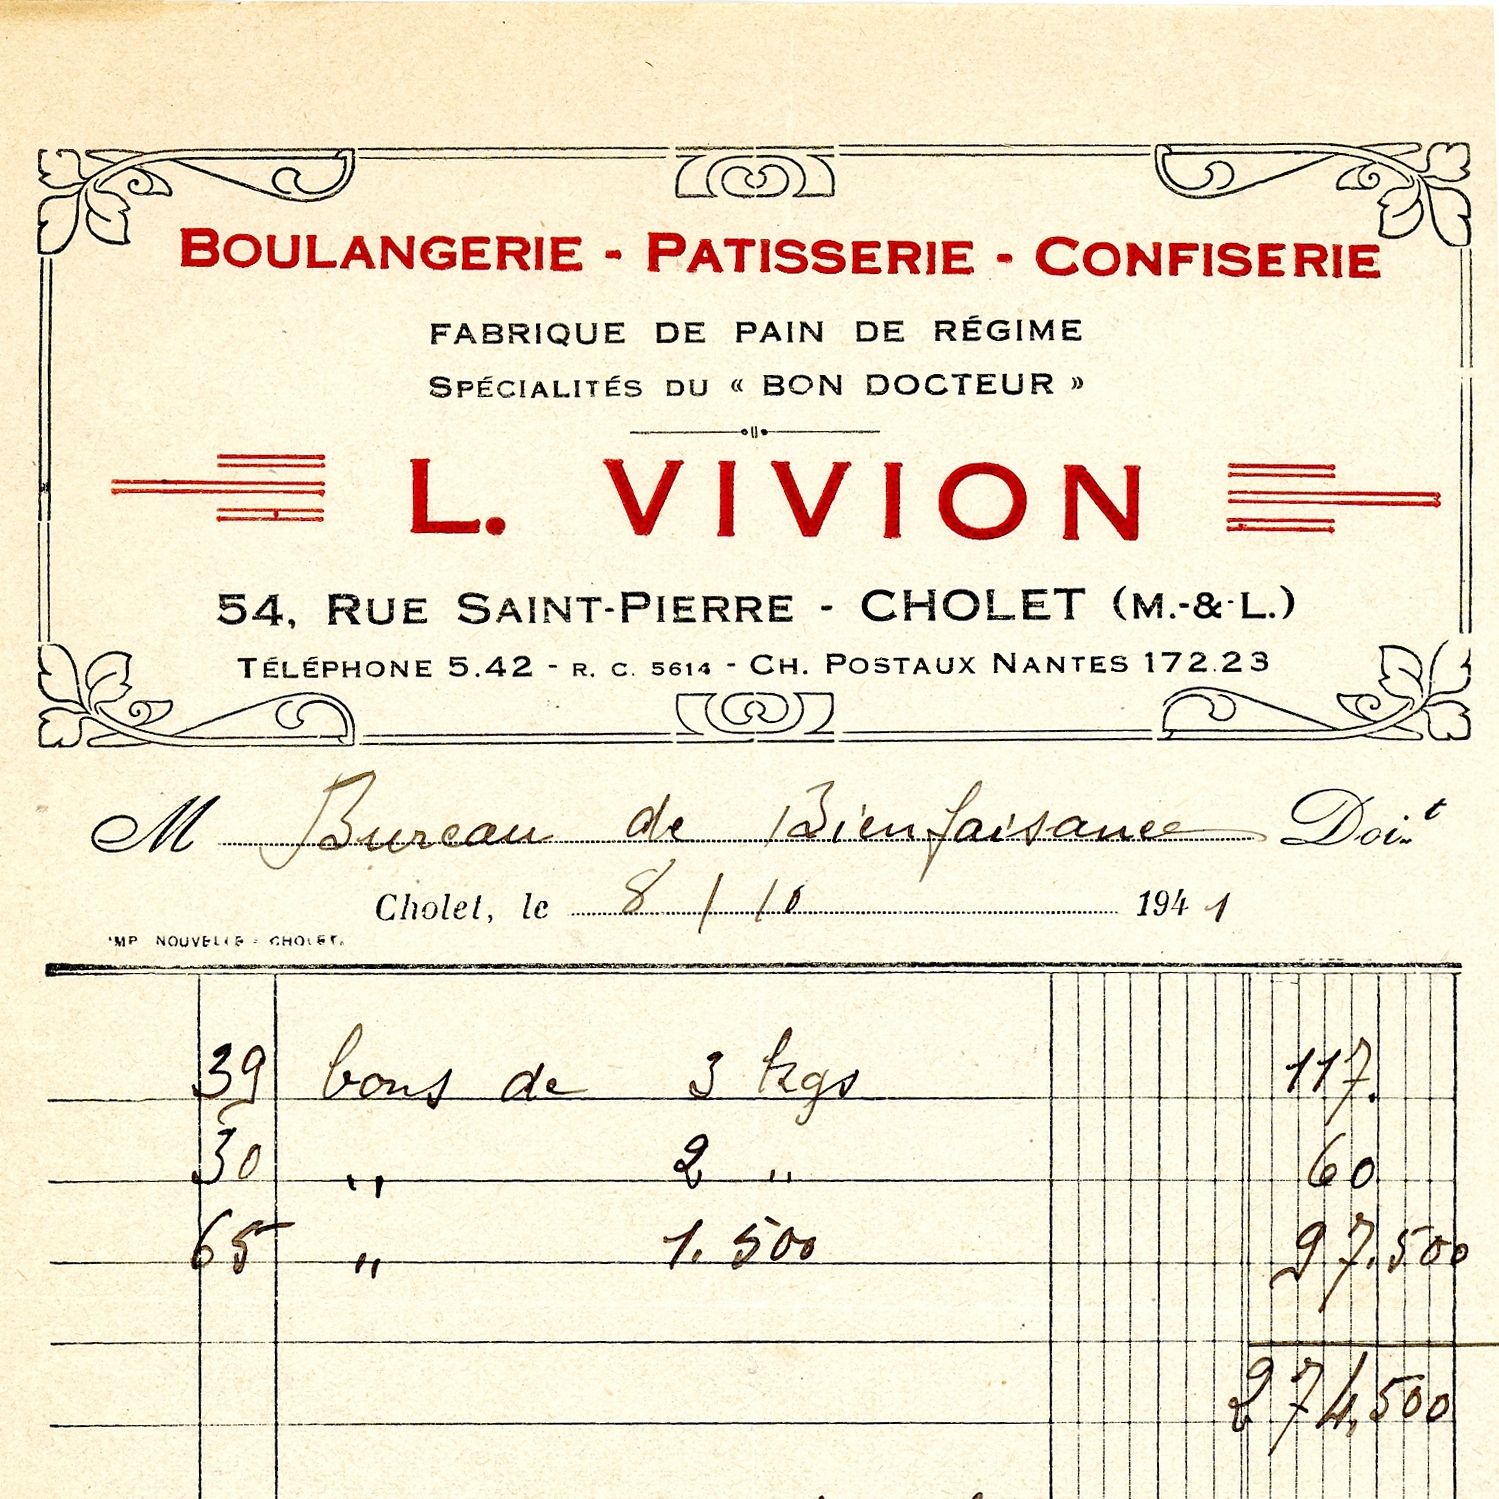 1J30/512 - Facture de la boulangerie Vivion, 1941. Coll. AMC